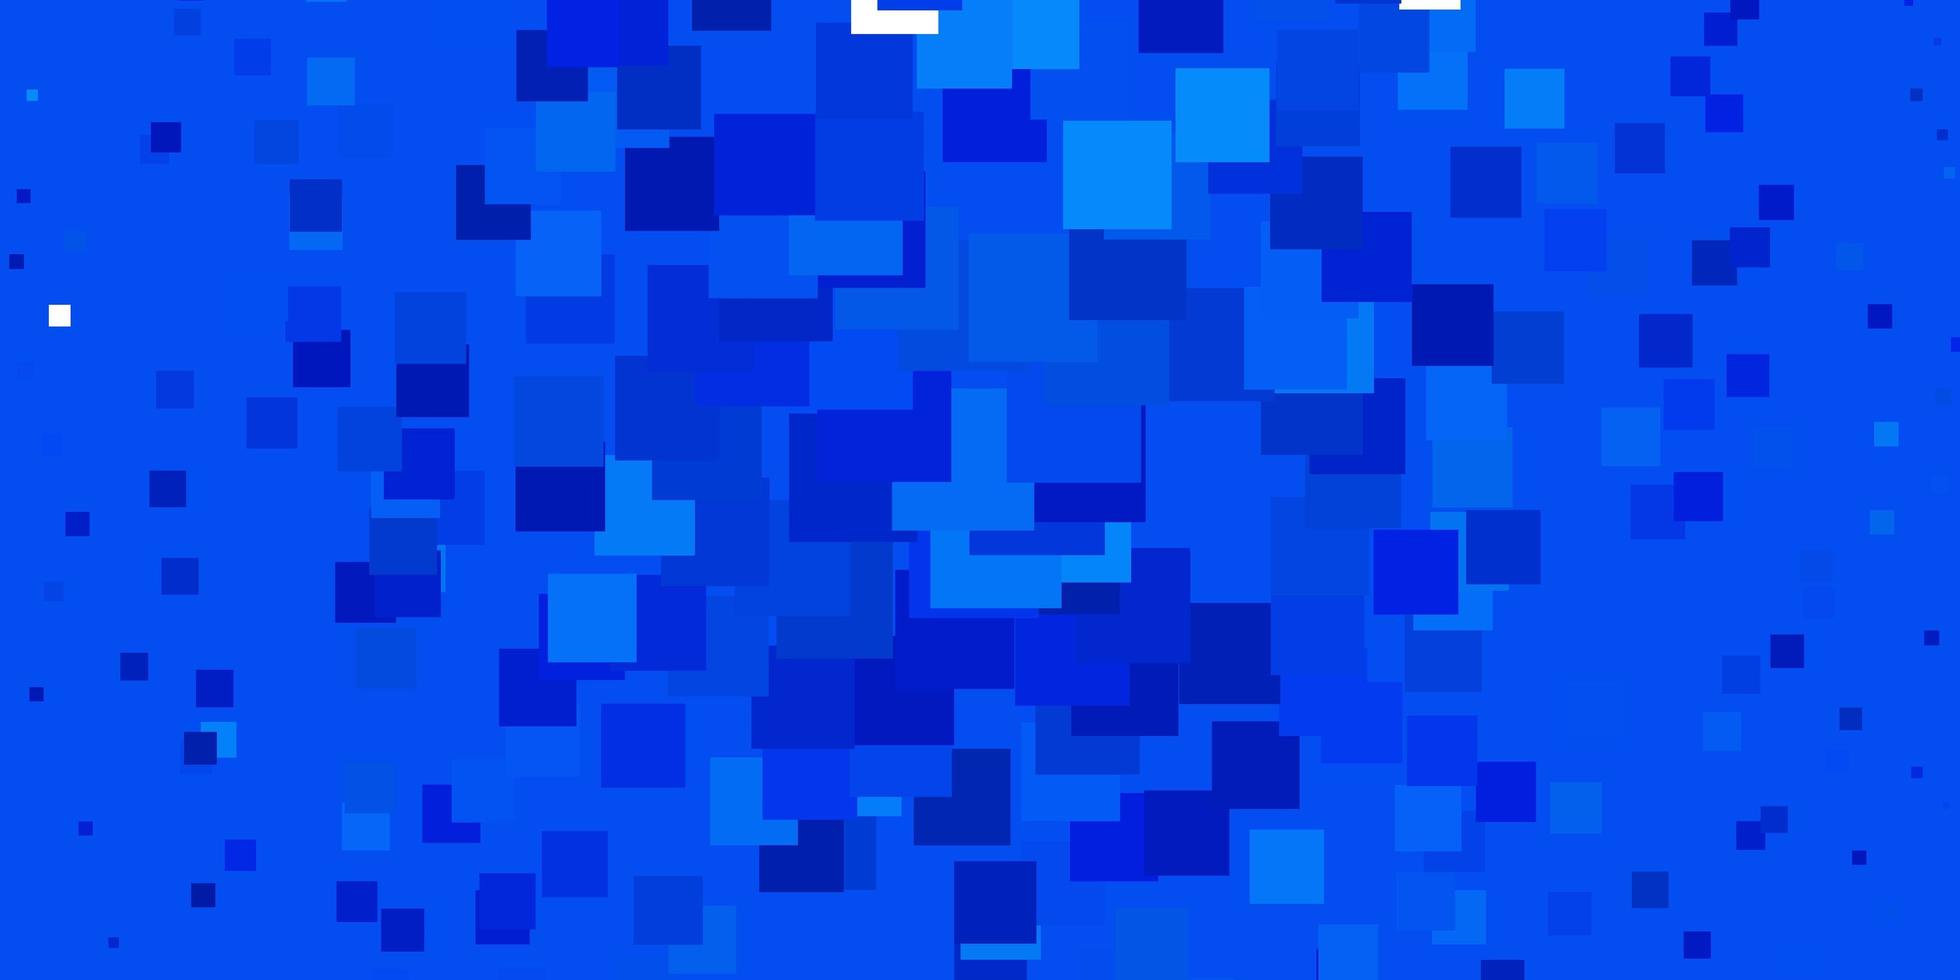 sfondo vettoriale azzurro in stile poligonale illustrazione colorata con motivo a rettangoli e quadrati sfumati per annunci pubblicitari